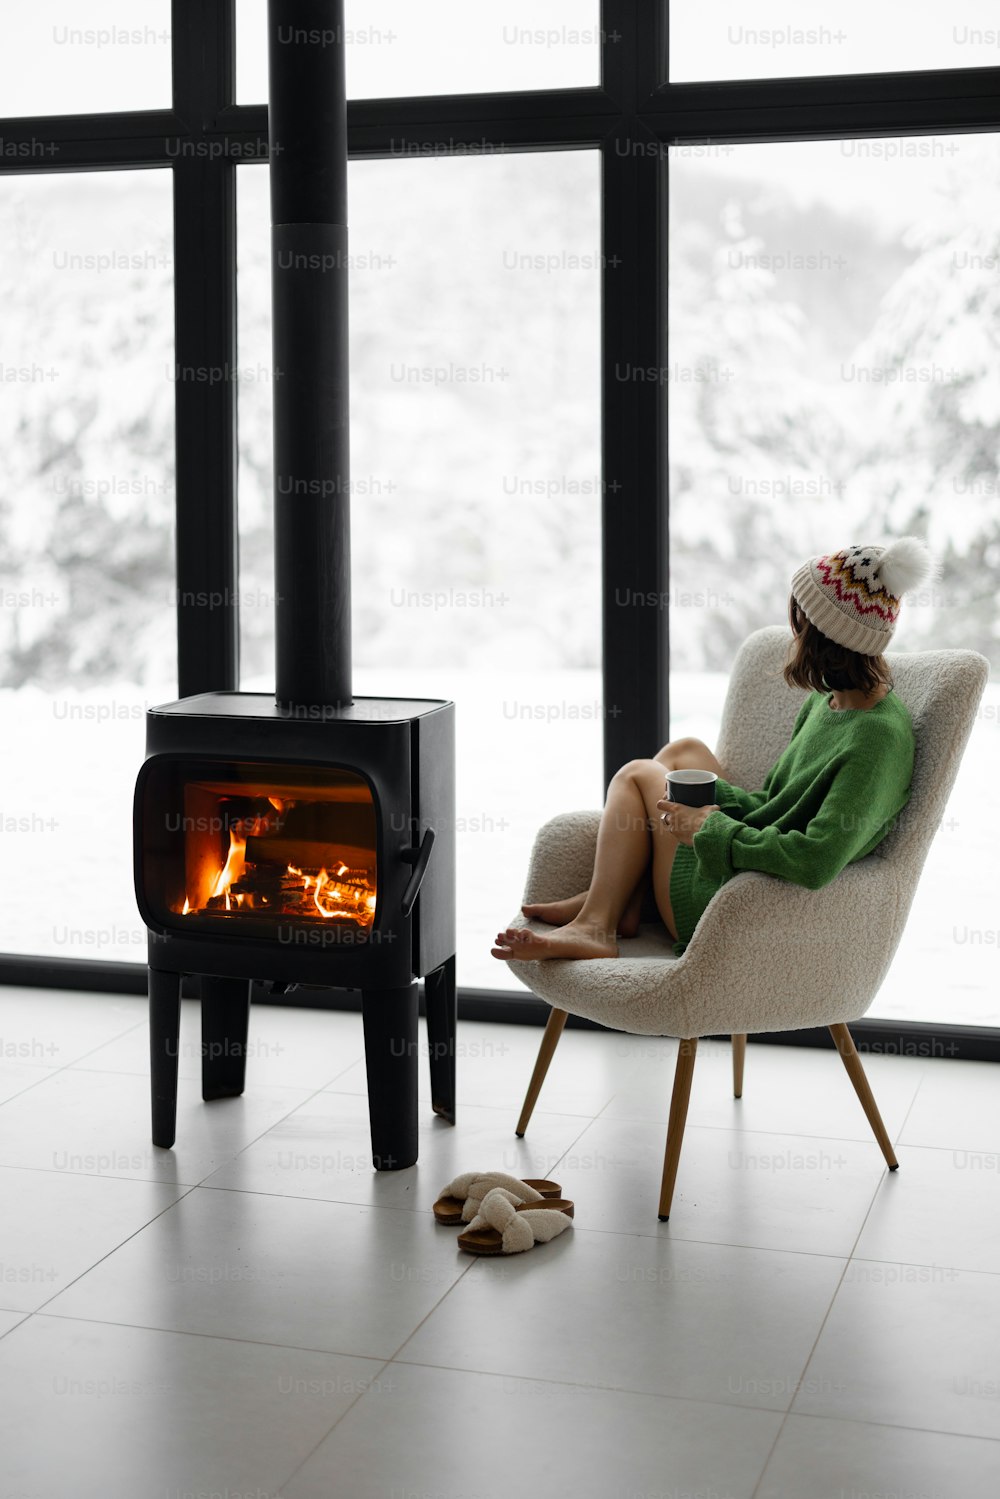 겨울철 자연 위의 현대적인 집의 벽난로 옆 의자에 컵을 들고 앉아 있는 여자. 집에서 겨울 분위기와 편안함의 개념. 모자와 녹색 스웨터를 입은 소녀